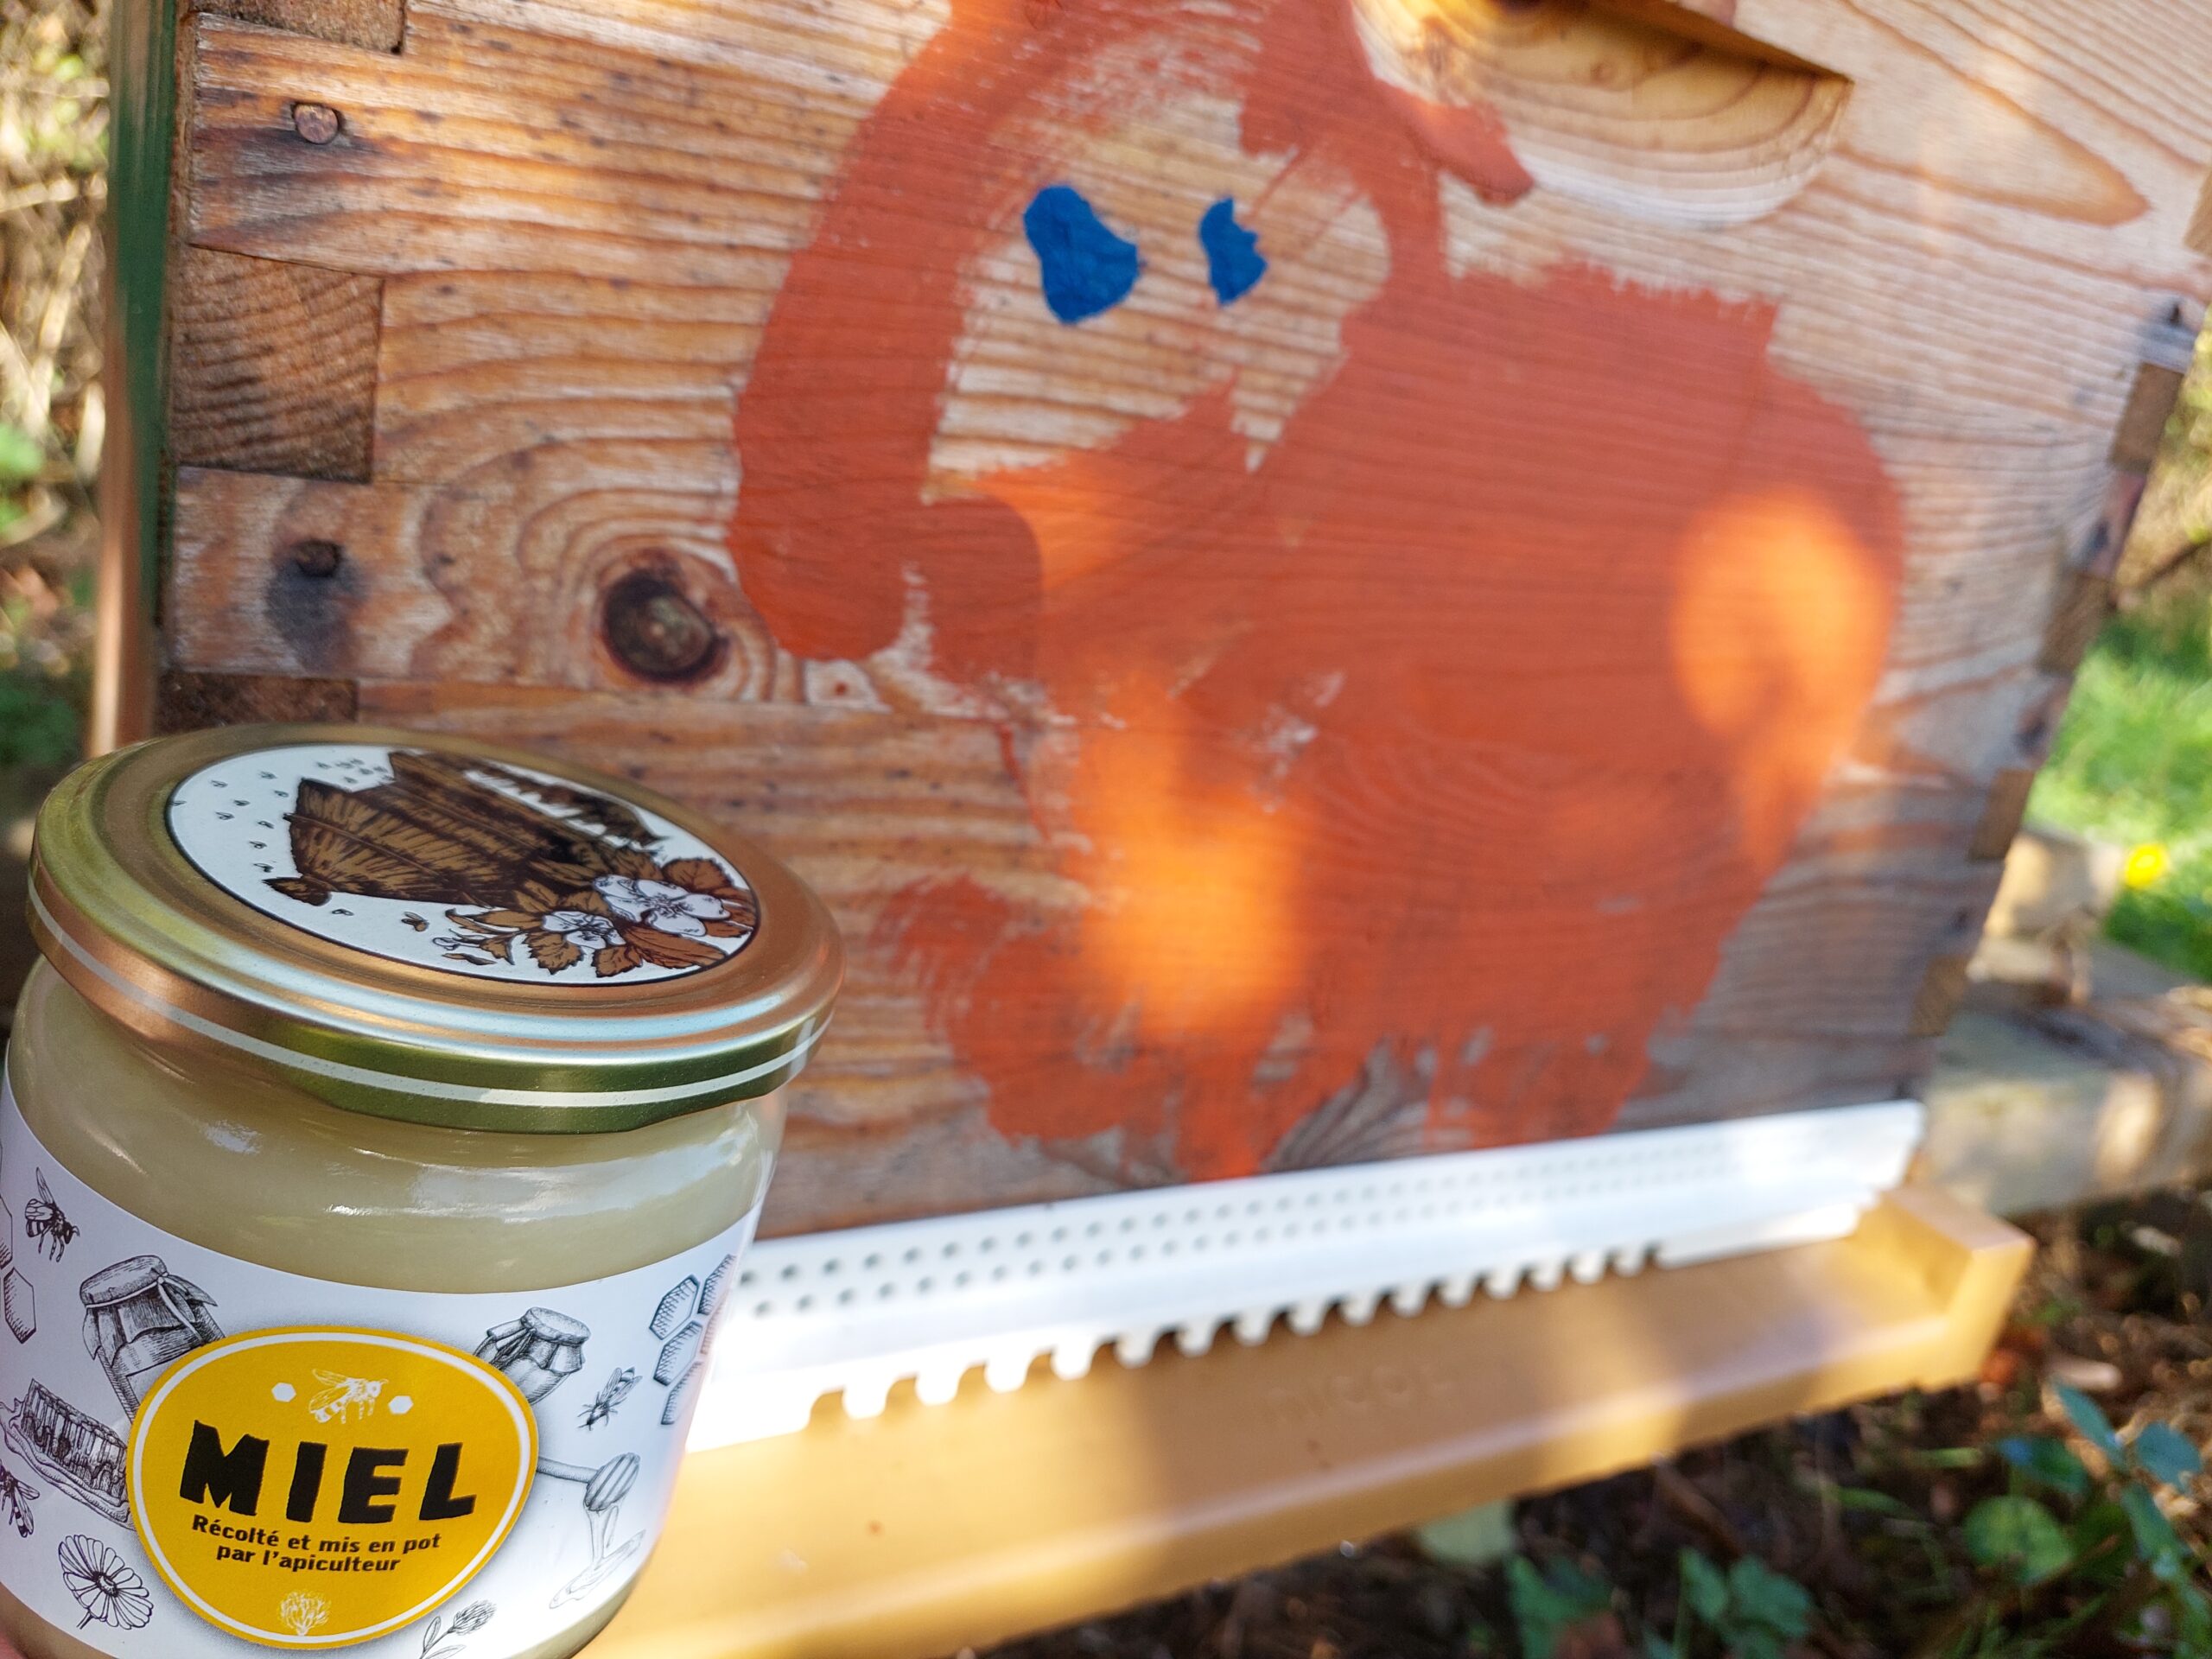 Miel local récolté et mis en pot par l'apiculteur près de chez moi !